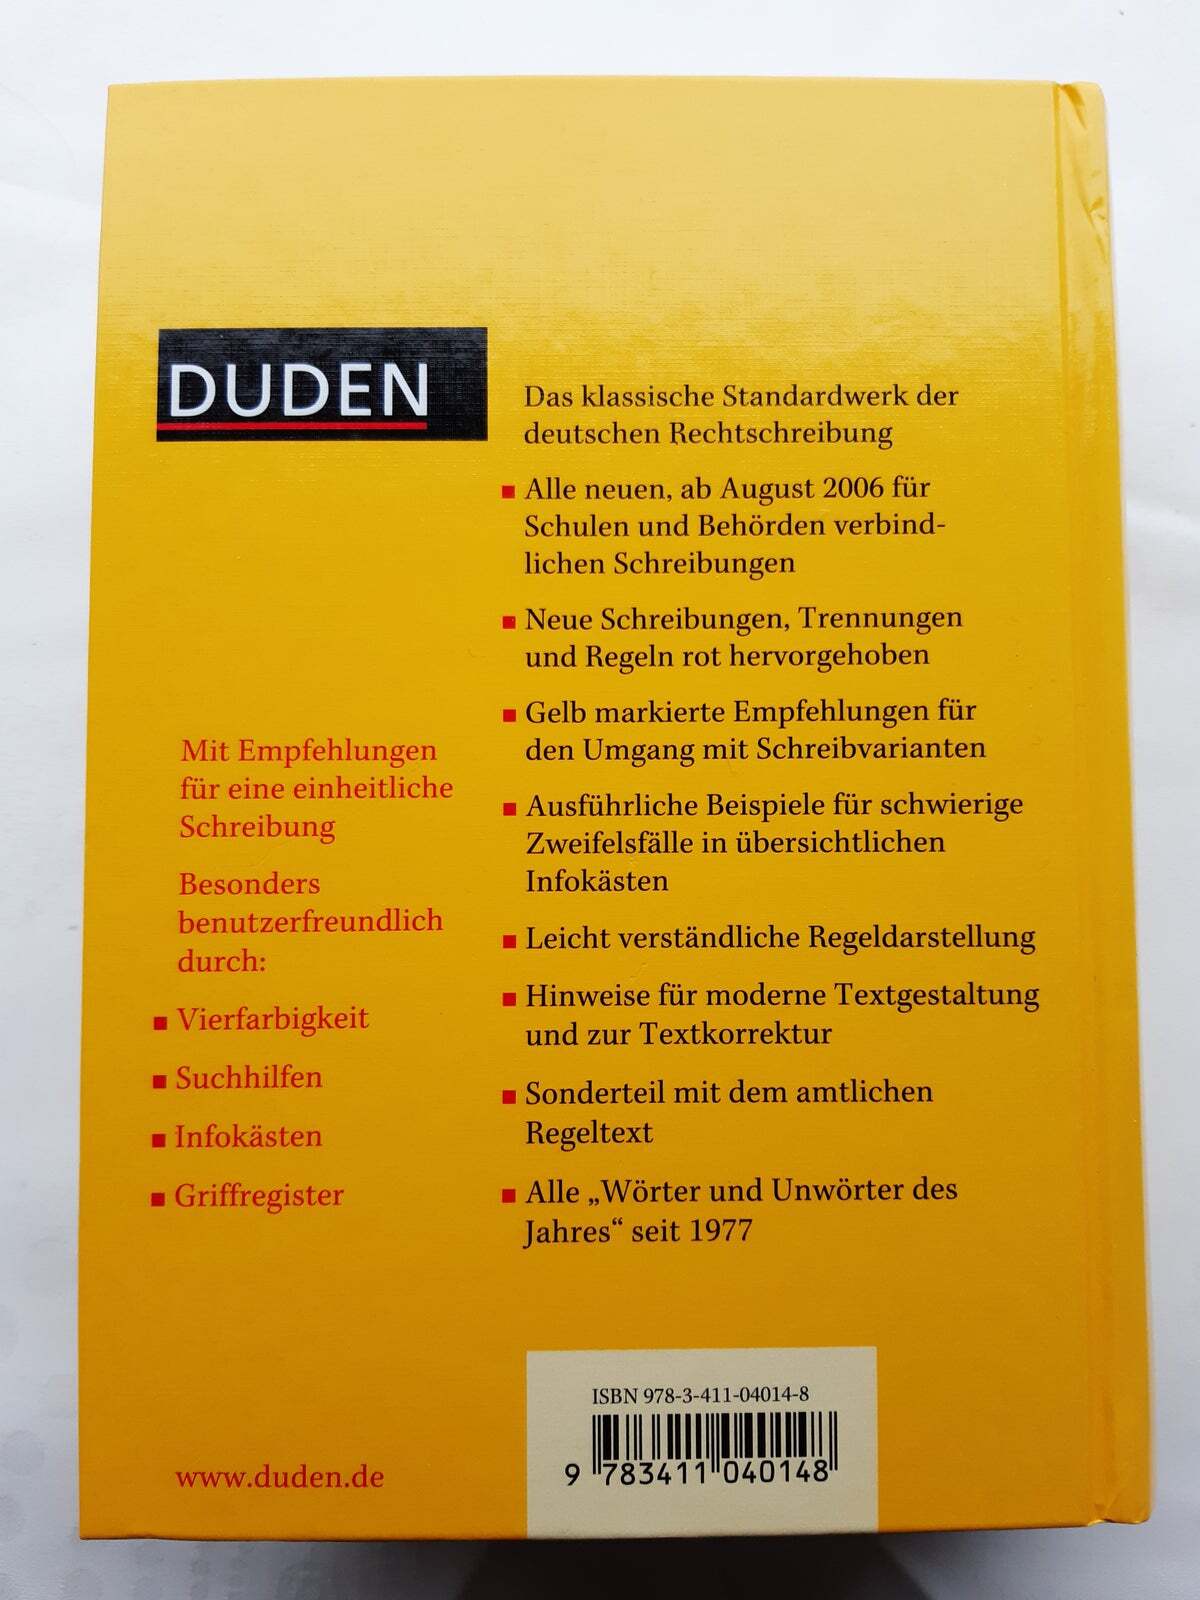 Duden Die deutsche Rechtschreibung, Dudenverlag, år 2006